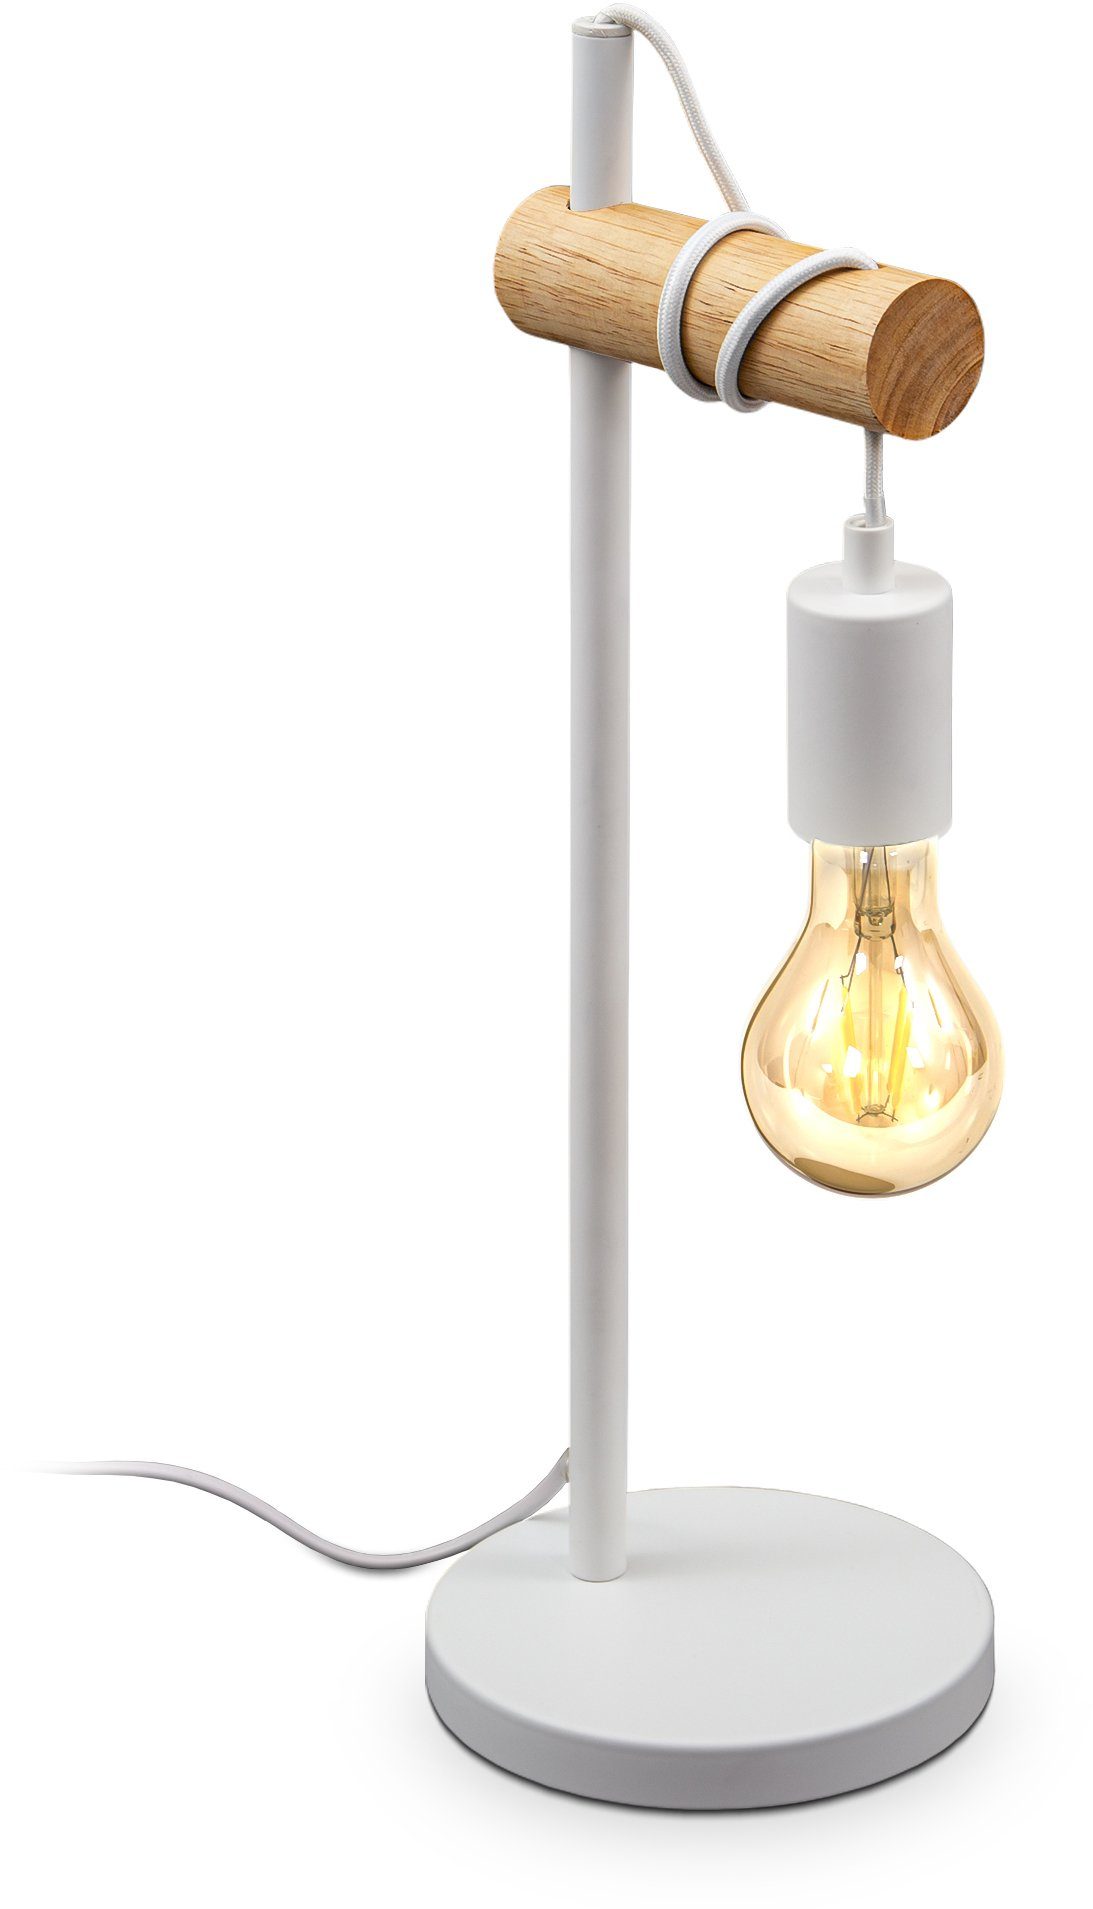 B.K.Licht Tischleuchte, 1 flammige Vintage Tischlampe, Industrial Design, Retro Lampe, Stahl, Holz, Rund, E27, ohne Leuchtmittel-Otto